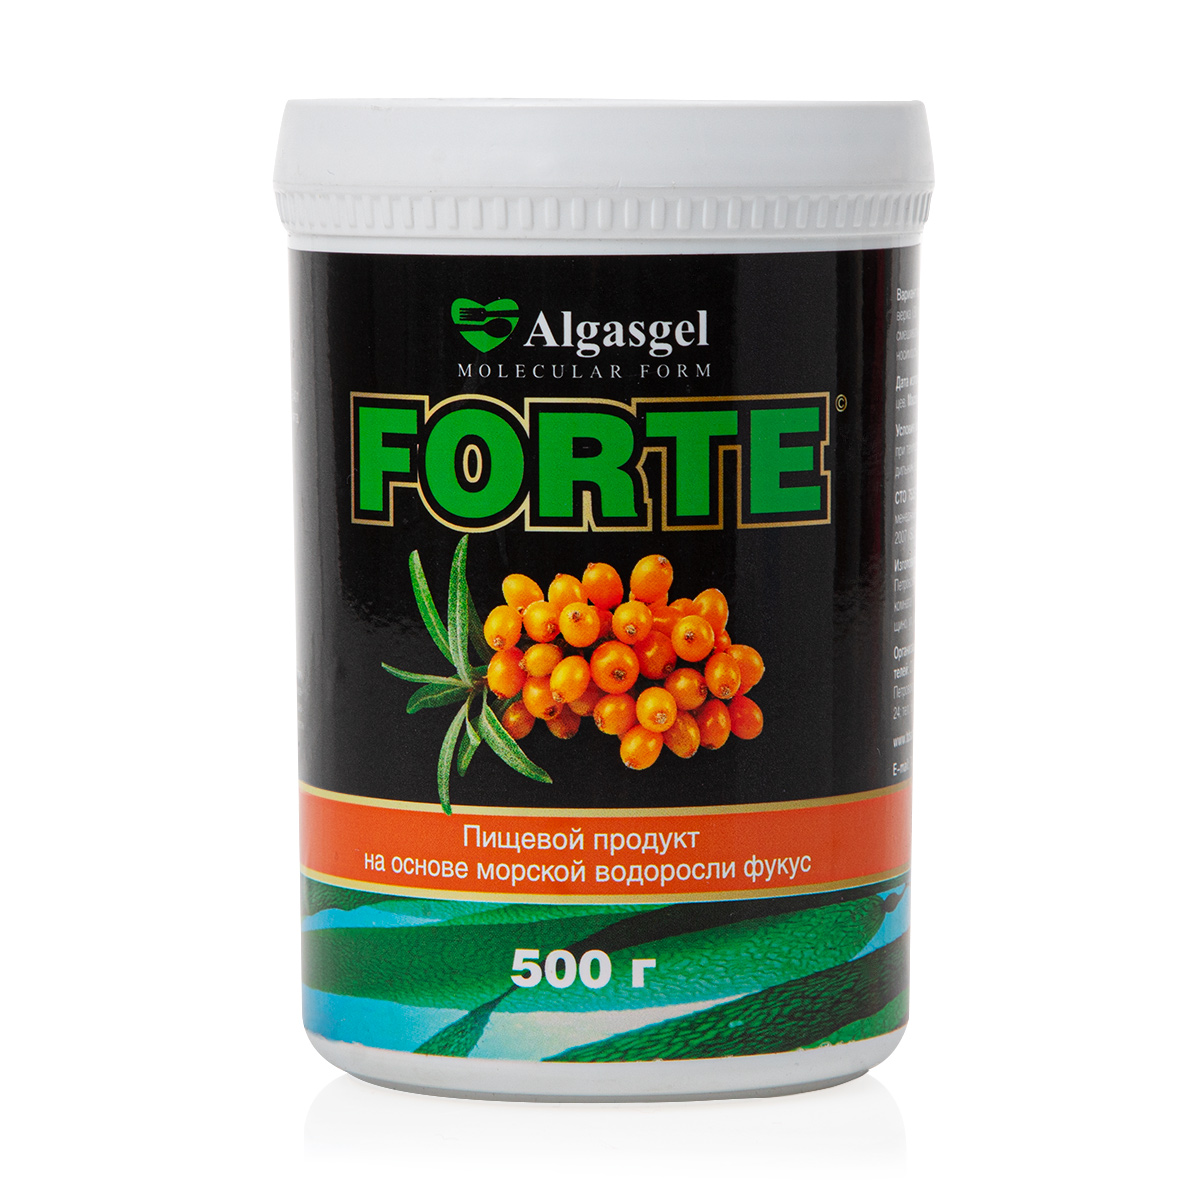 пищевой продукт algasgel glyco при сахарном диабете ii типа метаболическом синдроме гипотиреозе 500 г Пищевой продукт Algasgel Forte для снижения вечернего аппетита (500 г)